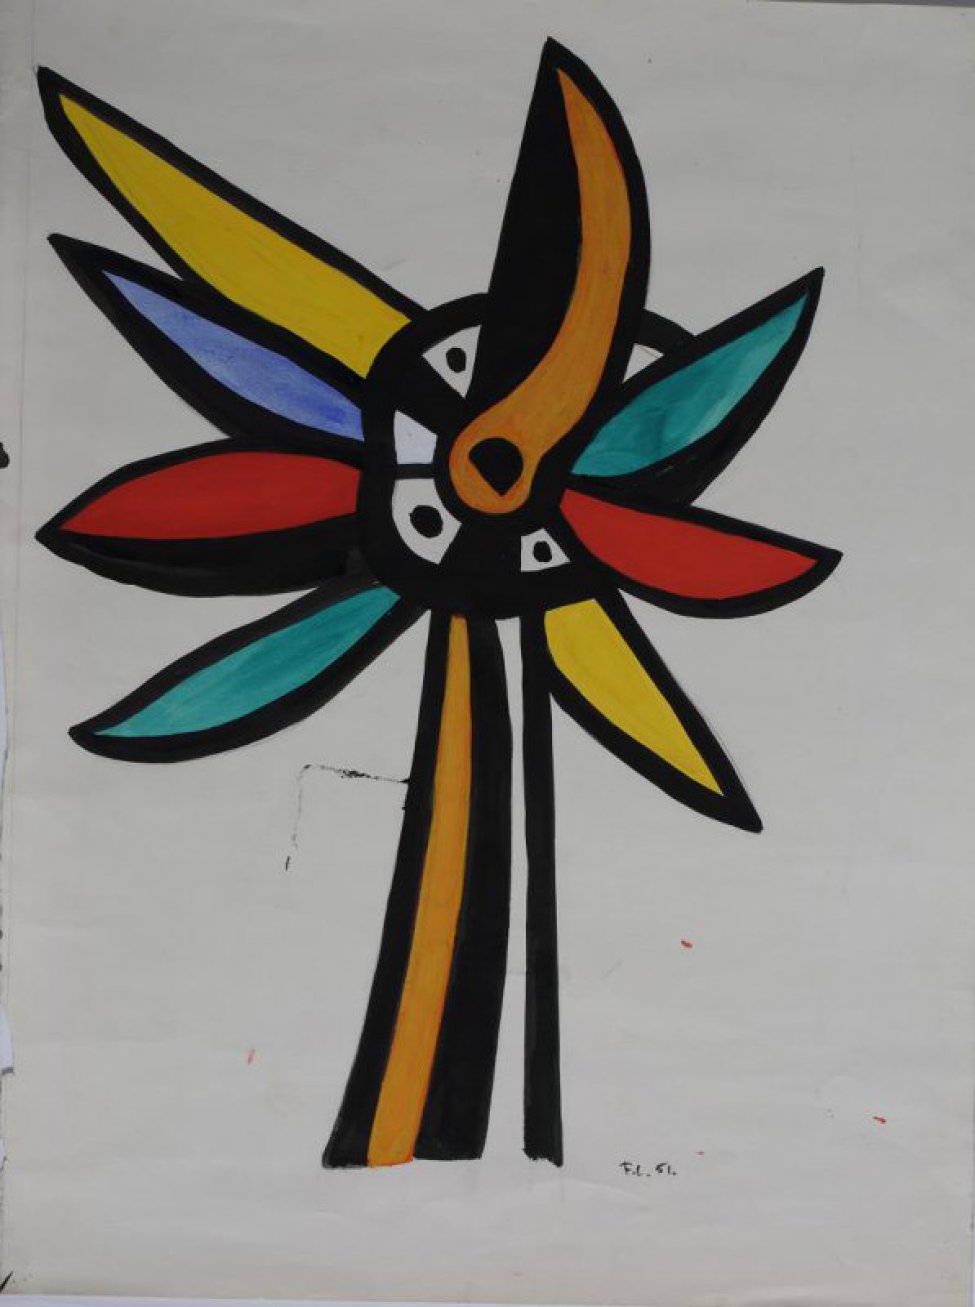 Стилизованное изображение цветка с восемью лепестками зеленого, красного, синего, желтого и оранжевого цветов, обведенных черным цветом.